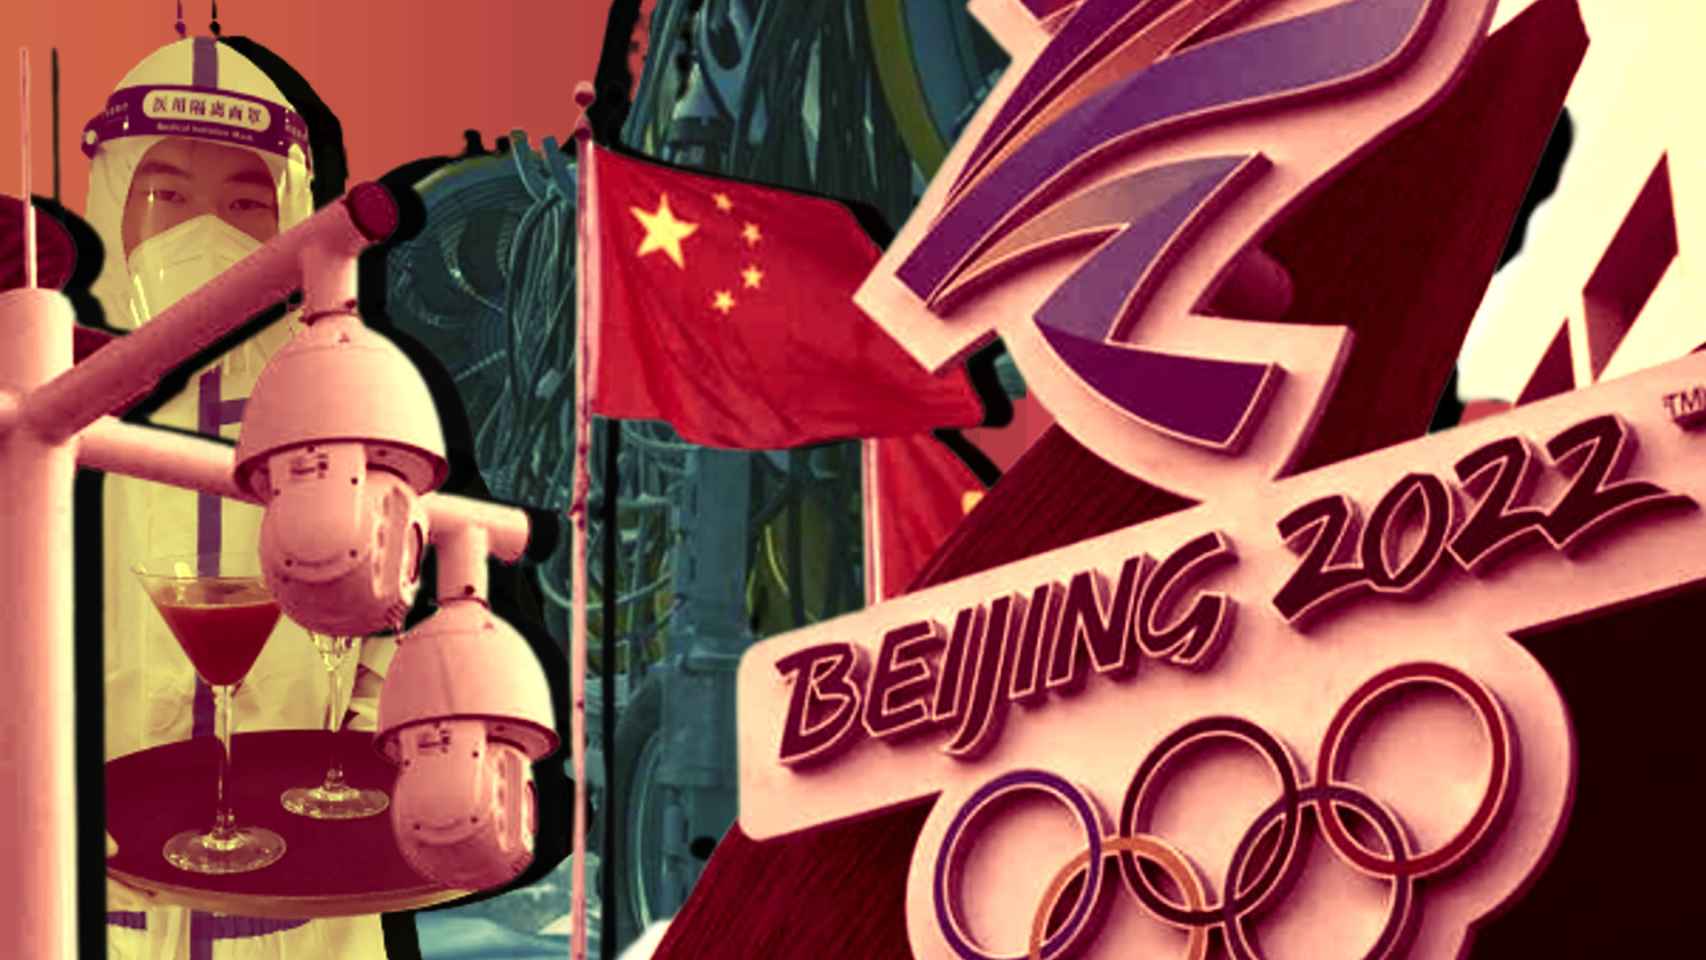 El cartel de los Juegos Olímpicos de Invierno de 2022, en un fotomontaje con las cámaras de vigilancia, un camarero con un EPI y los cañones de nieve artificial.